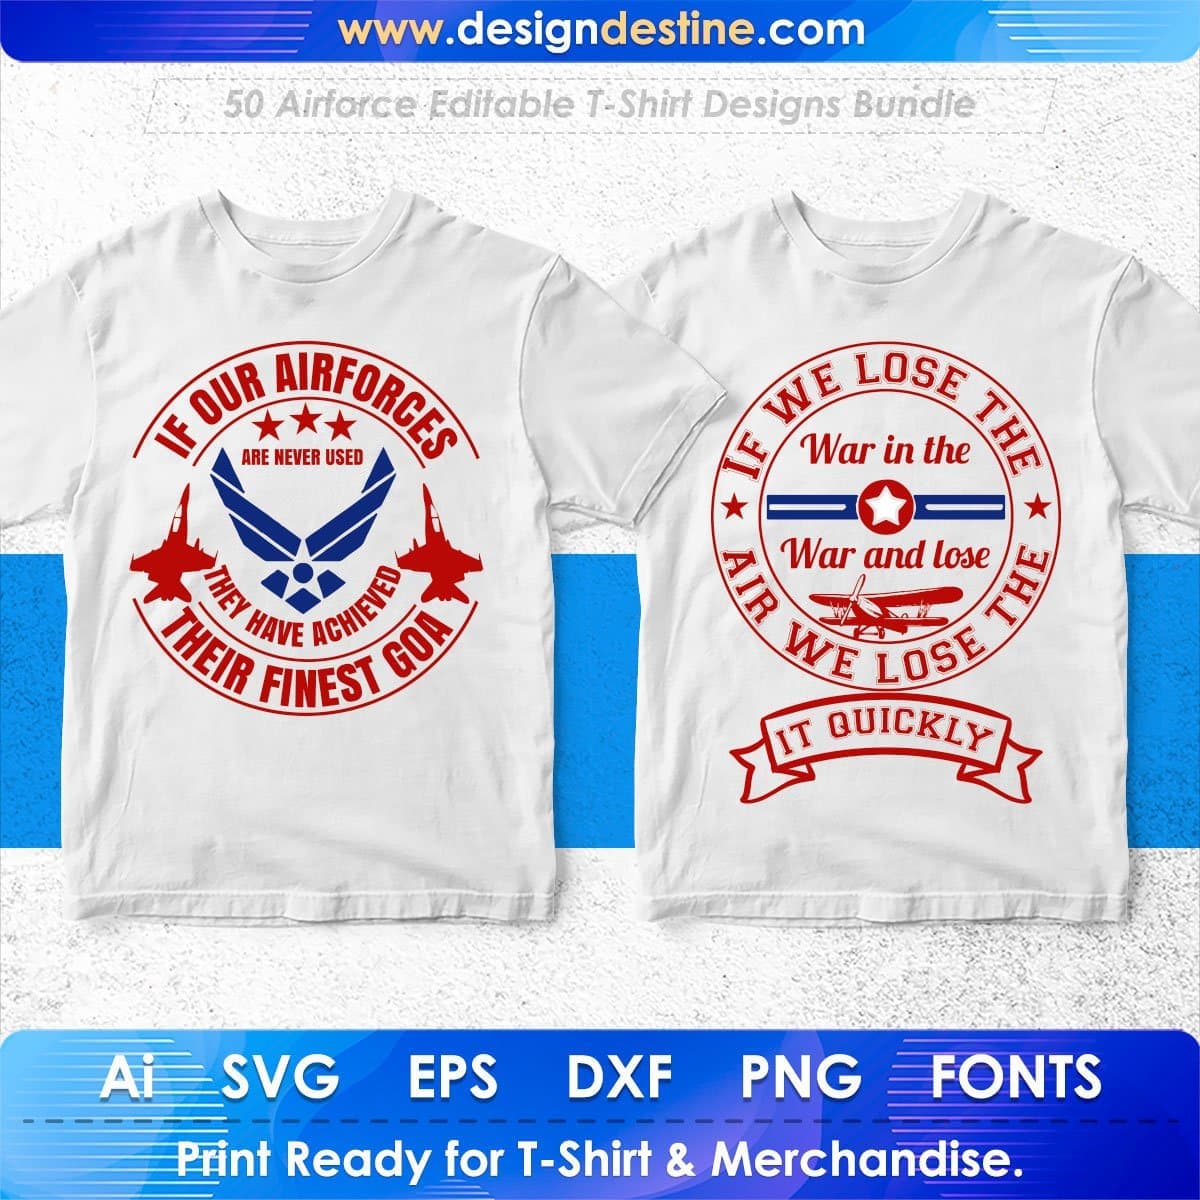 Airforce 50 Editable T-shirt Designs Bundle Part 1